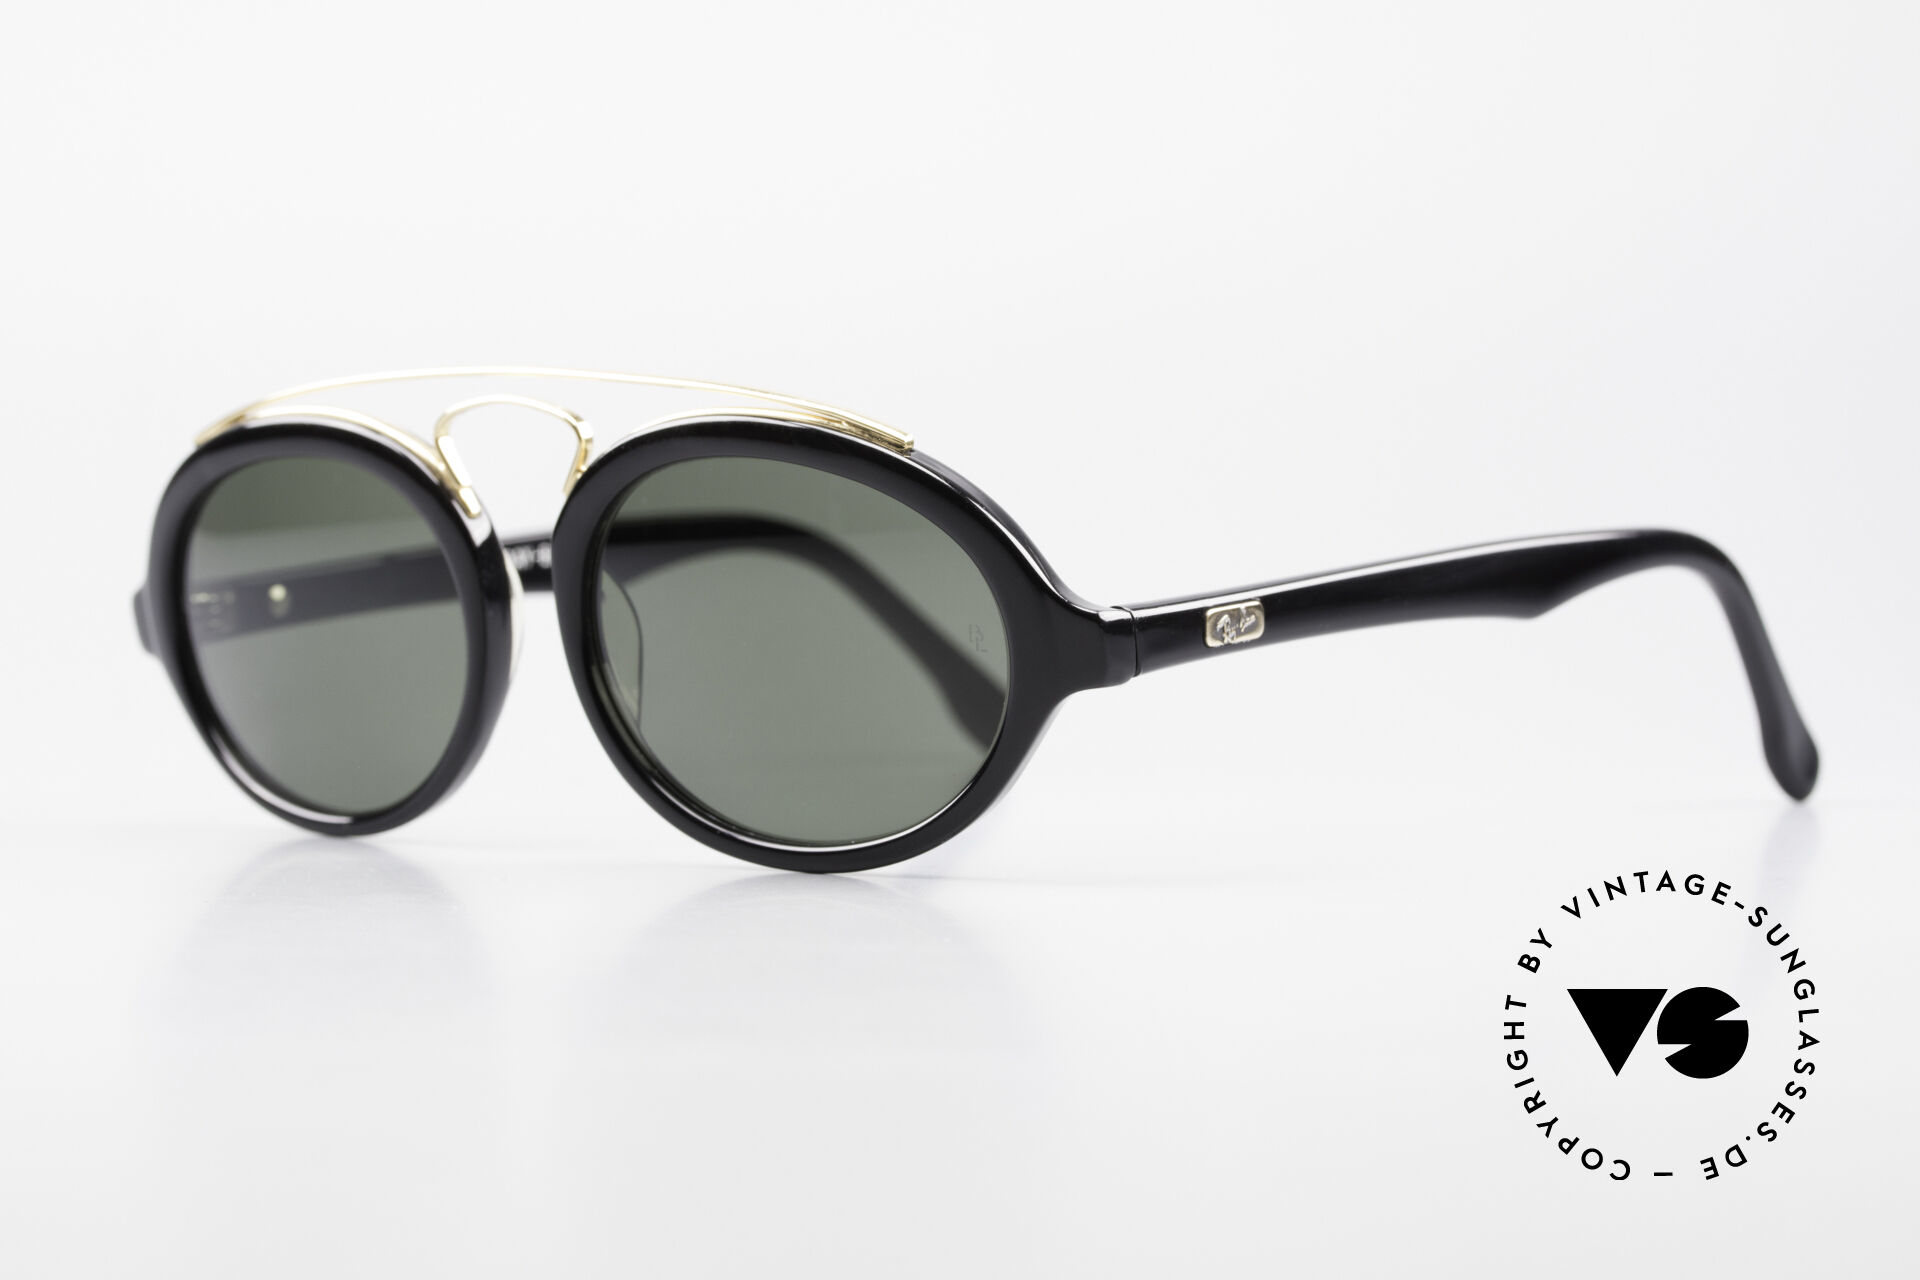 Ray Ban Aviators VTG 933 g15 Sunglasses